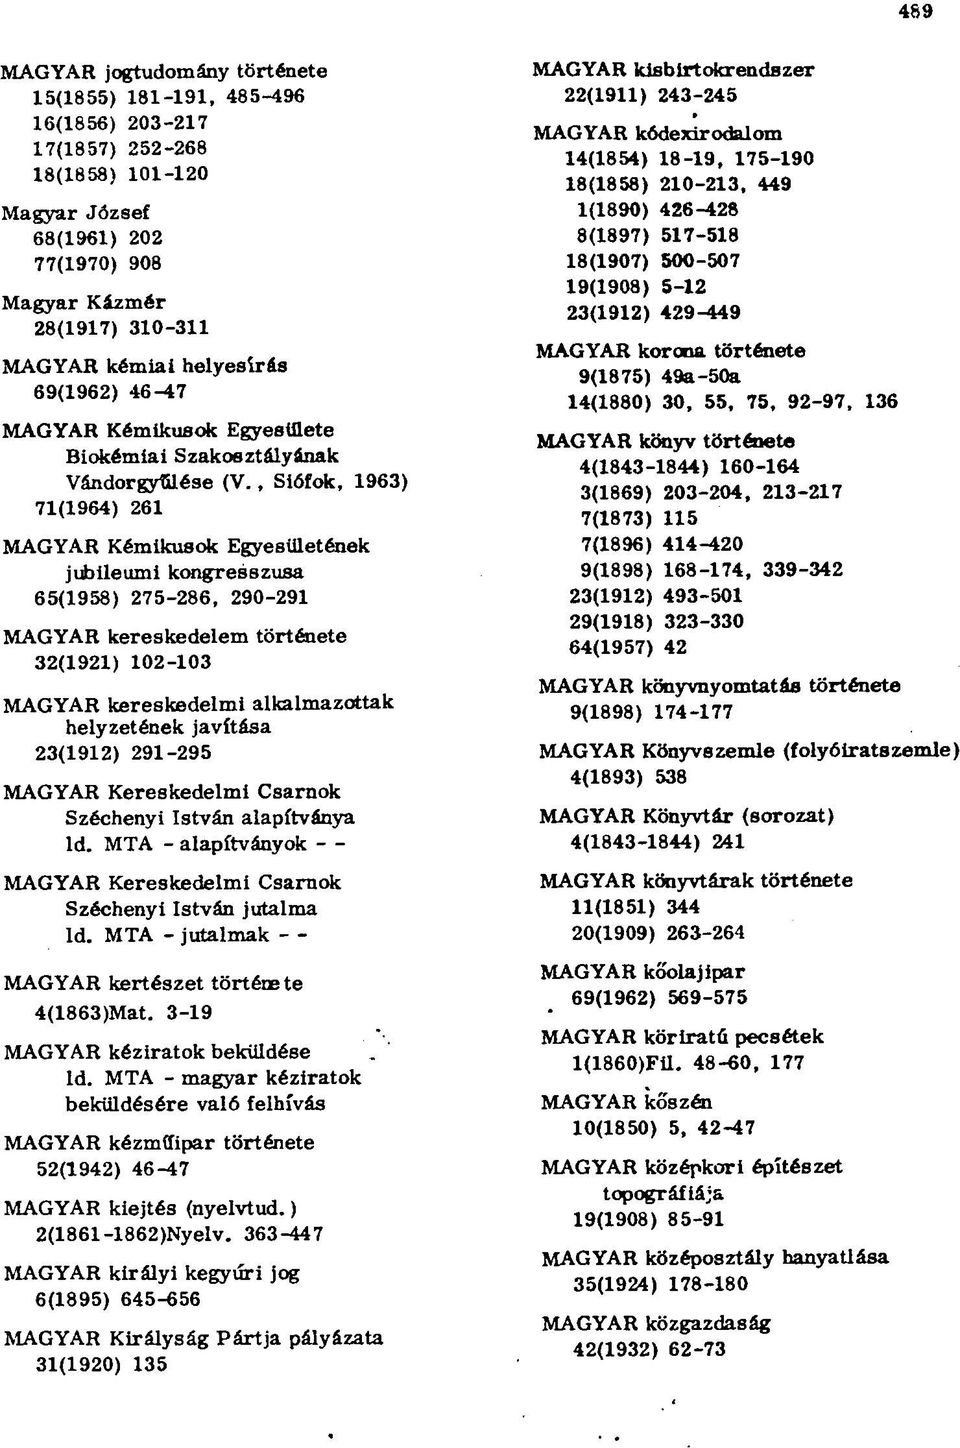 , Siófok, 1963) 71(1964) 261 MAGYAR Kémikusok Egyesületének jubileumi kongresszusa 65(1958 ) 275-286, 290-291 MAGYAR kereskedelem története 32(1921) 102-103 MAGYAR kereskedelmi alkalmazottak